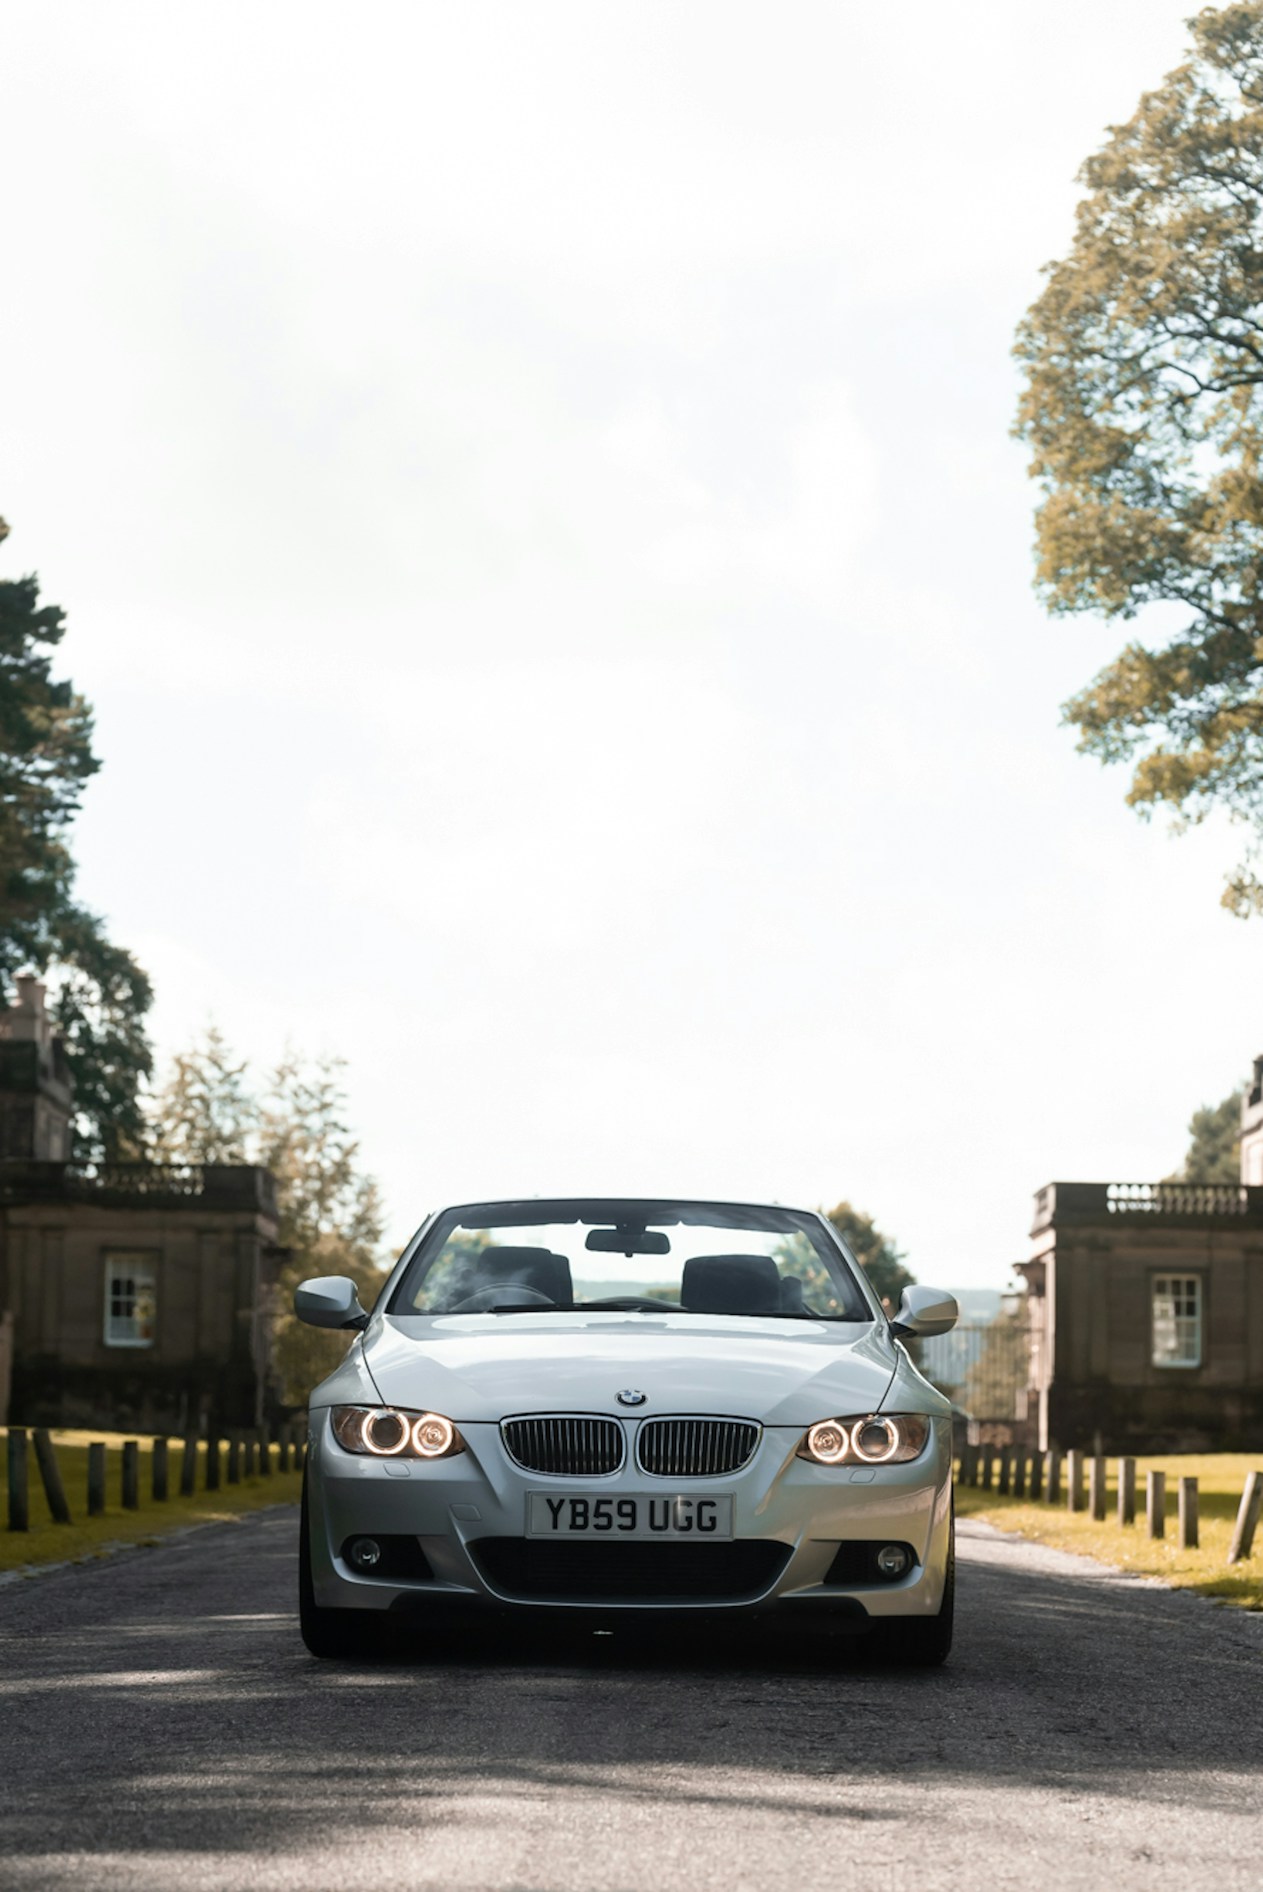 BMW 3 series (E92 coupe / E93 convertible) – JP USA